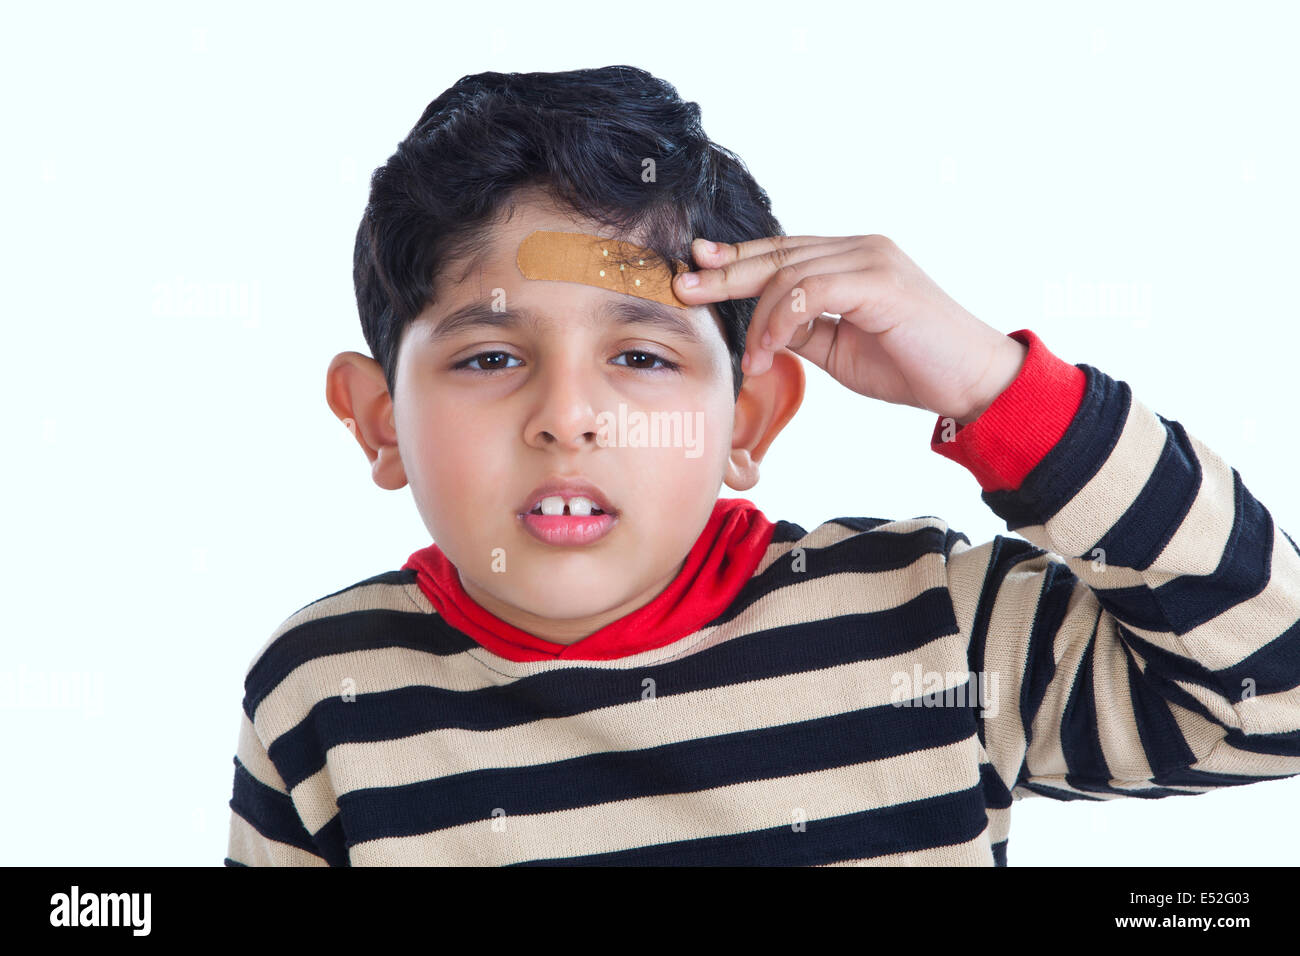 Retrato de niño con Band-aid en frente Foto de stock